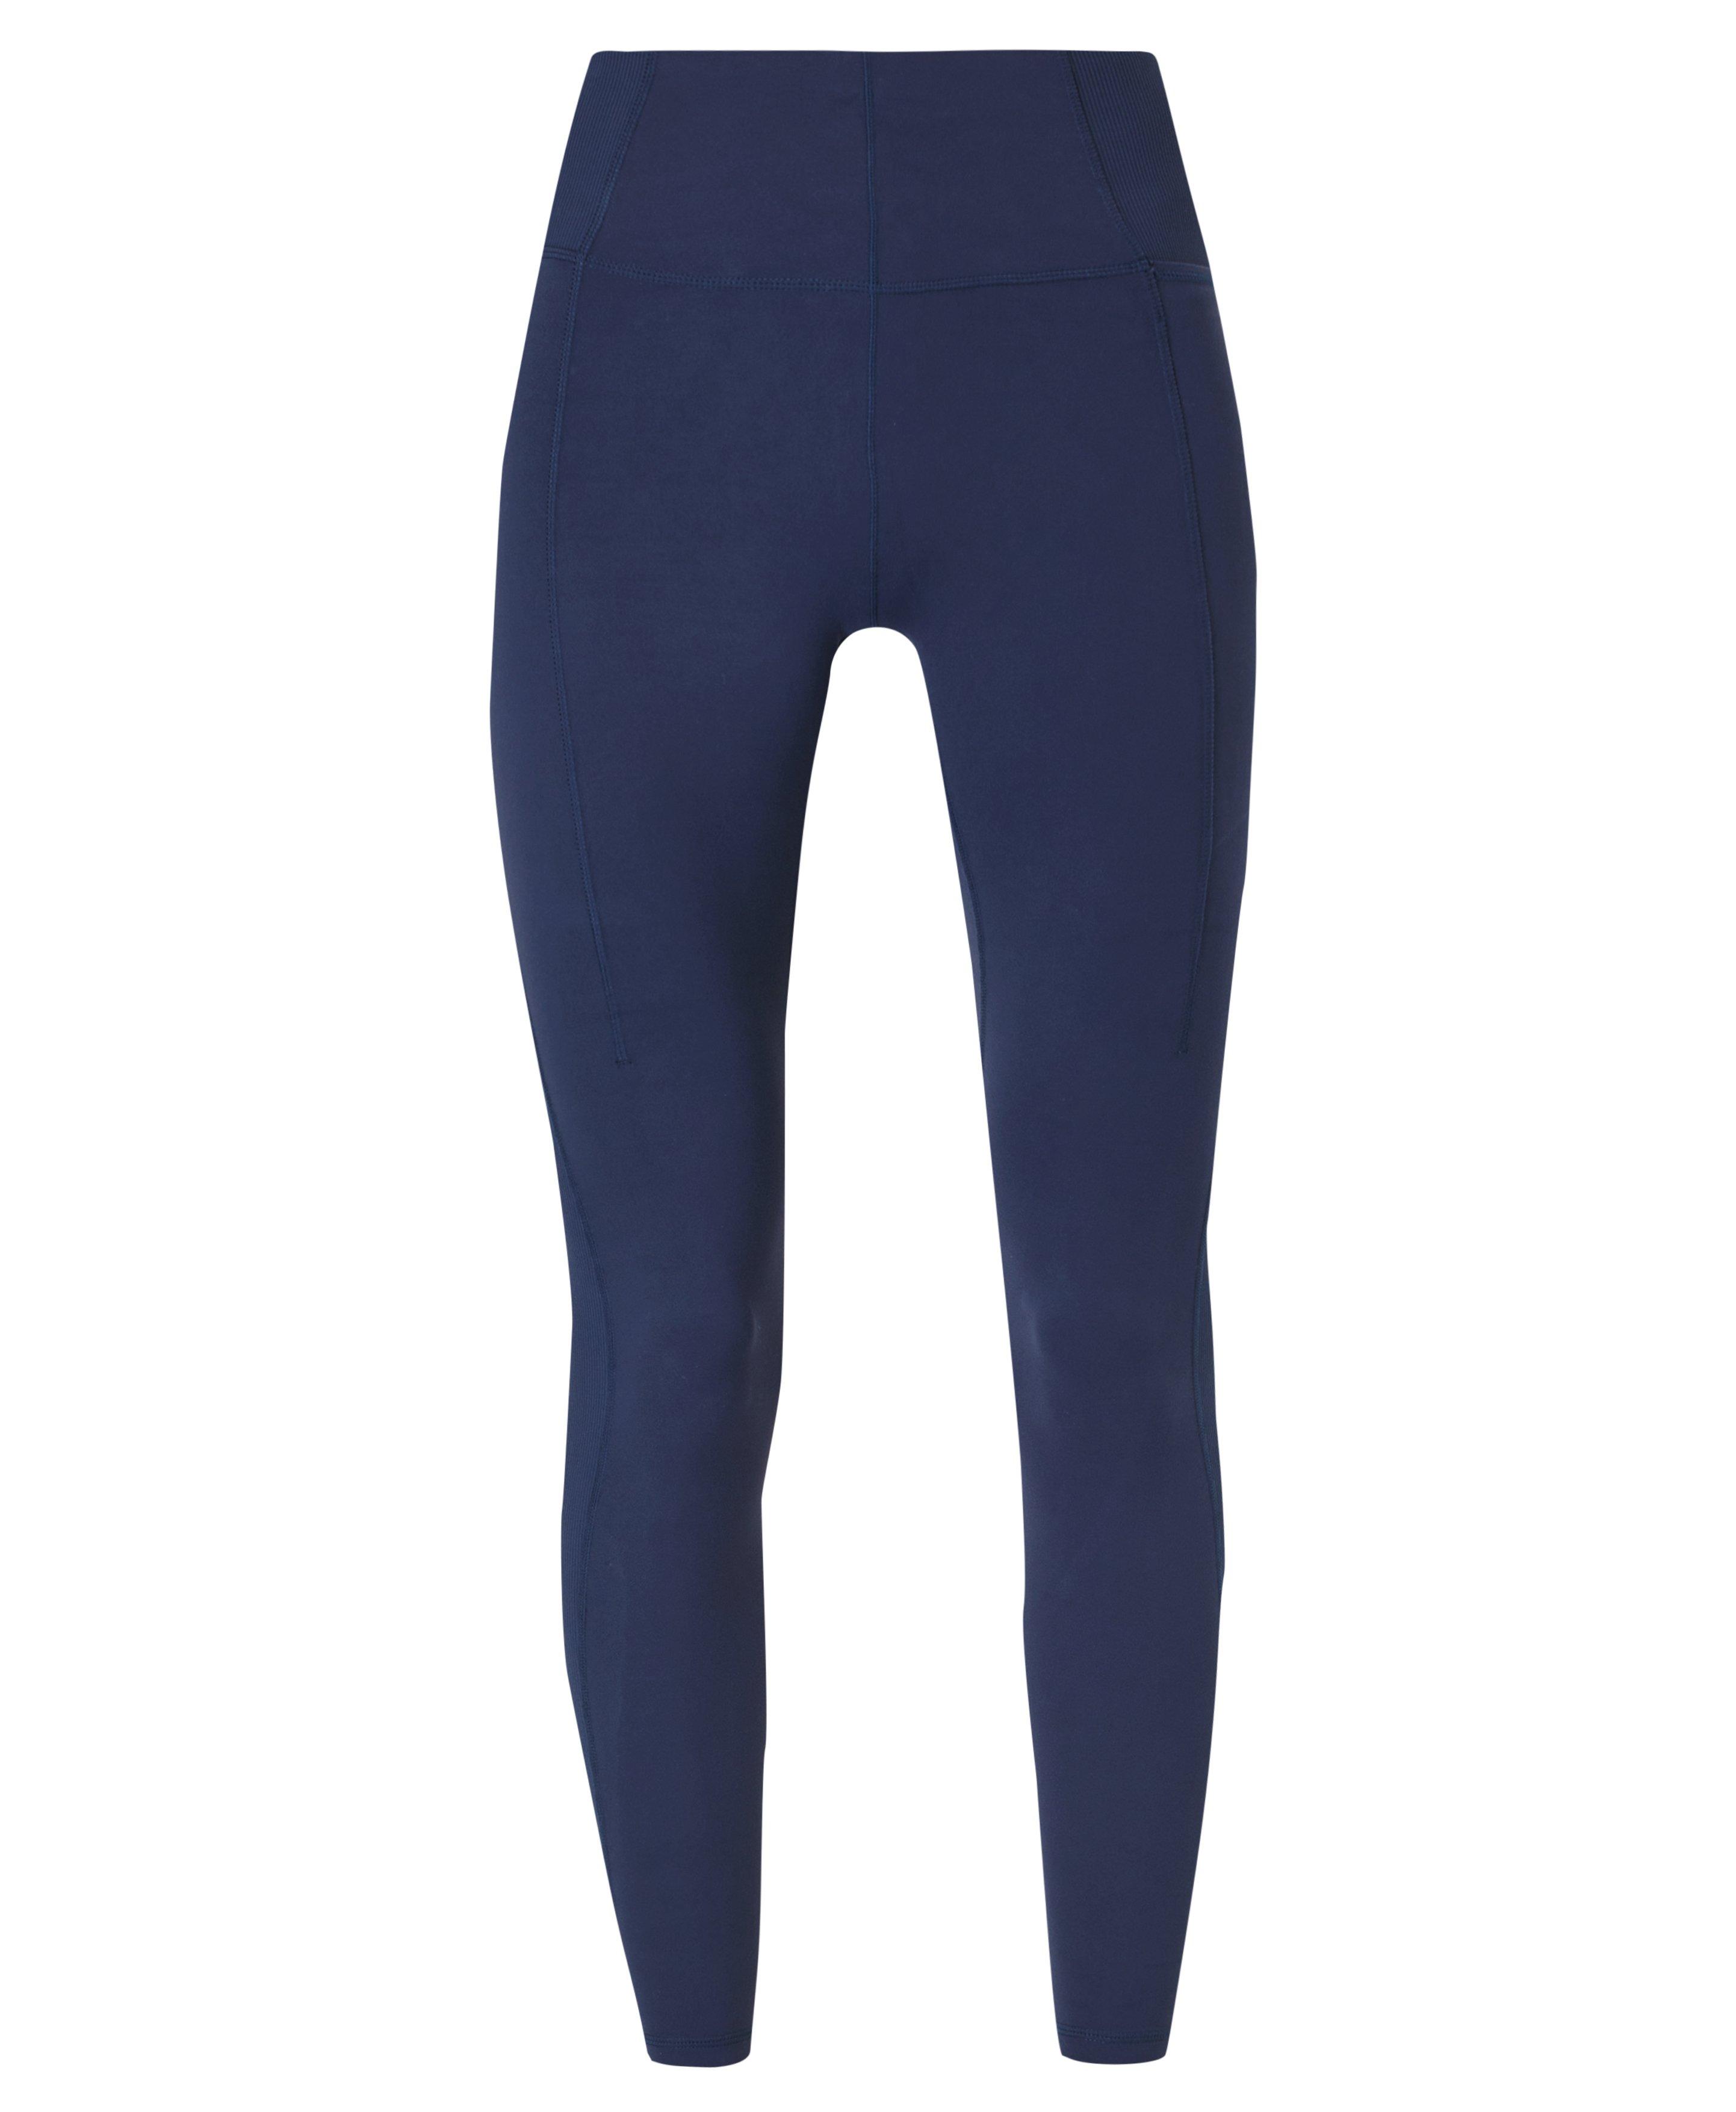 Super Soft Ribbed Yoga Leggings - Navy Blue, Women's Leggings